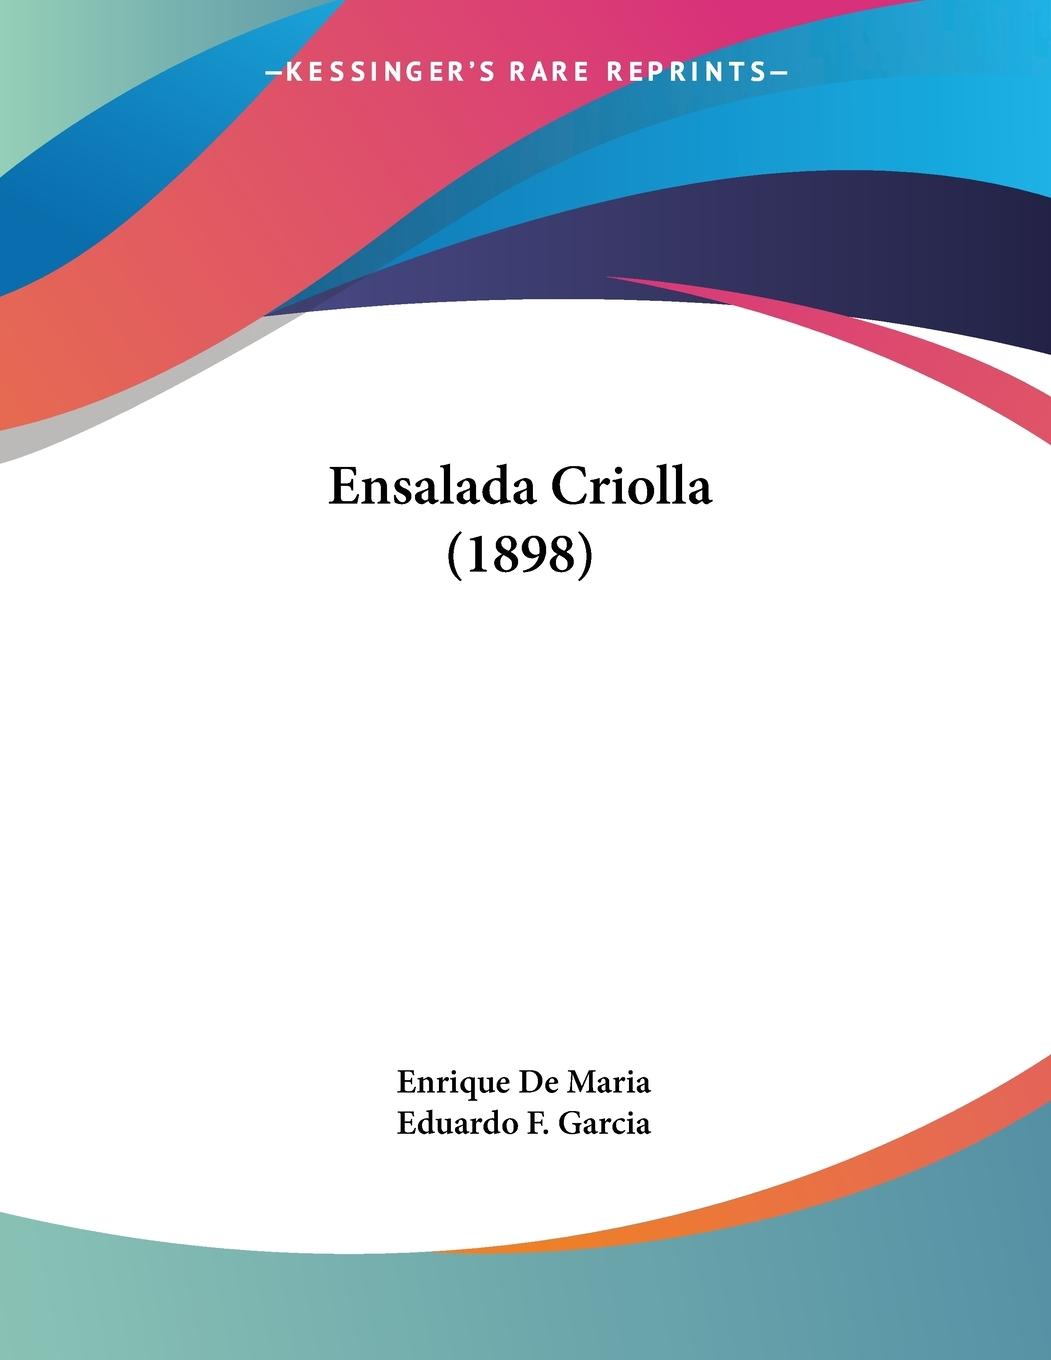 Ensalada Criolla (1898) - De Maria, Enrique Garcia, Eduardo F.